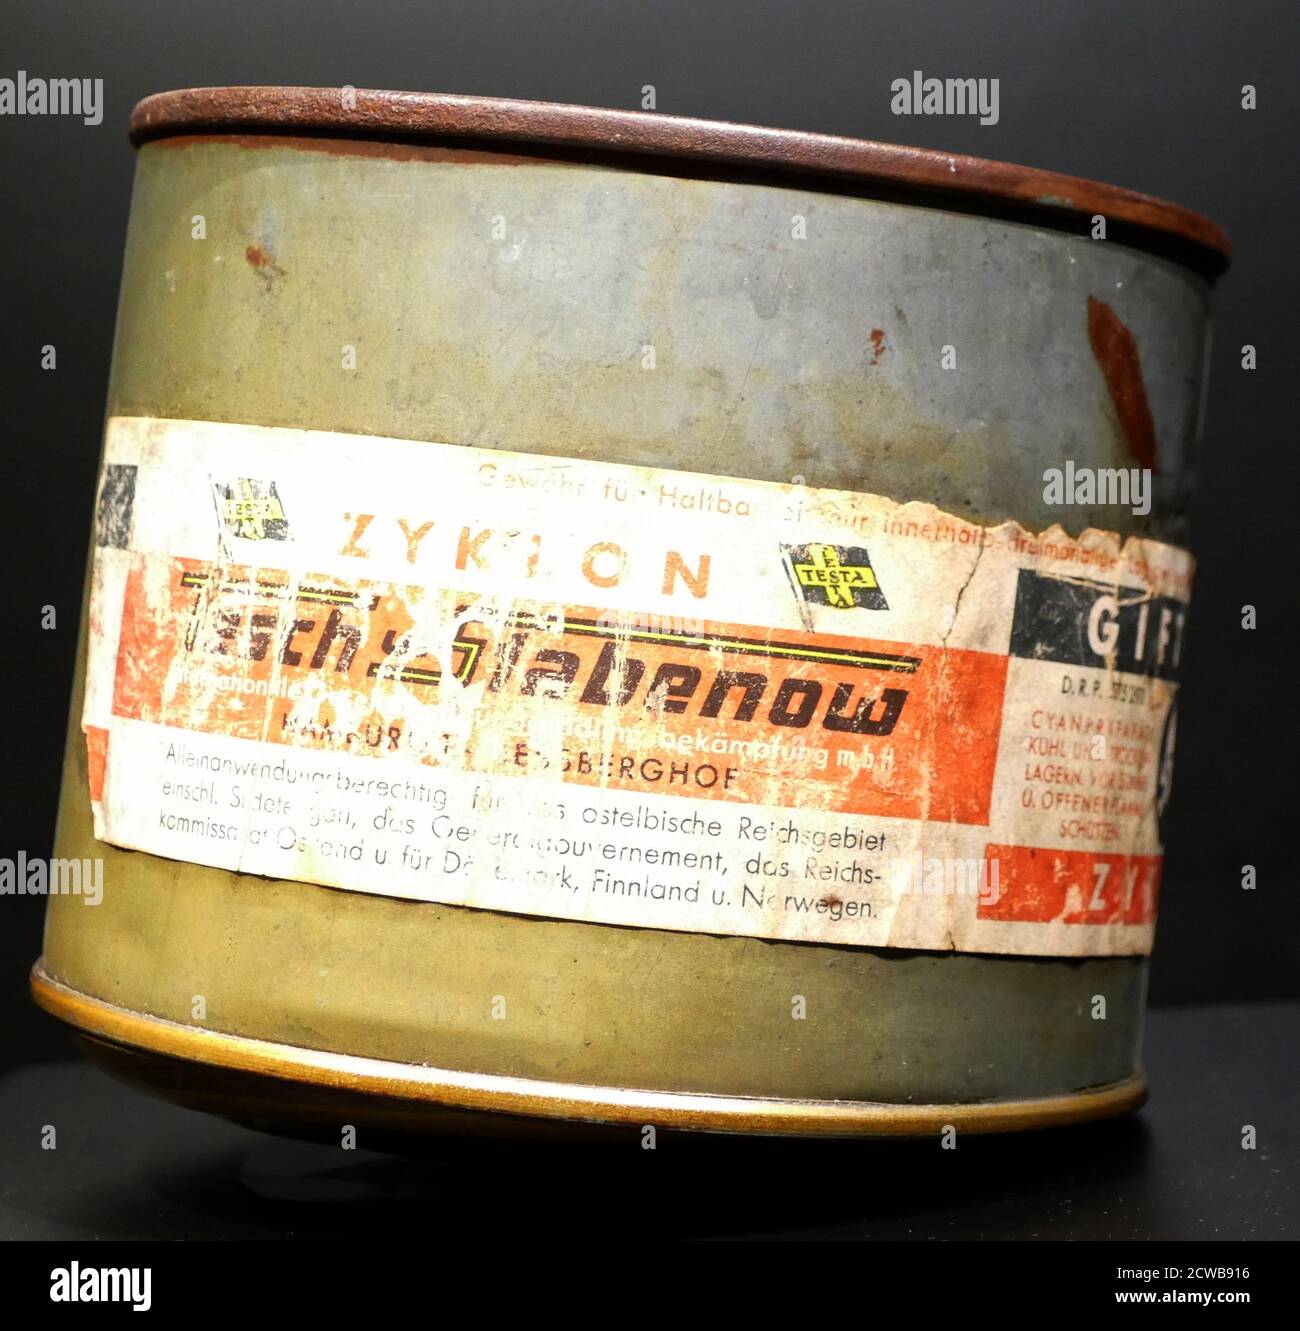 CAN of Zyklon B, un pesticida inventato in Germania e utilizzato in Germania nazista nelle camere a gas per uccidere gli ebrei come parte dell'Olocausto, come ad Auschwitz e in altri campi di sterminio Foto Stock